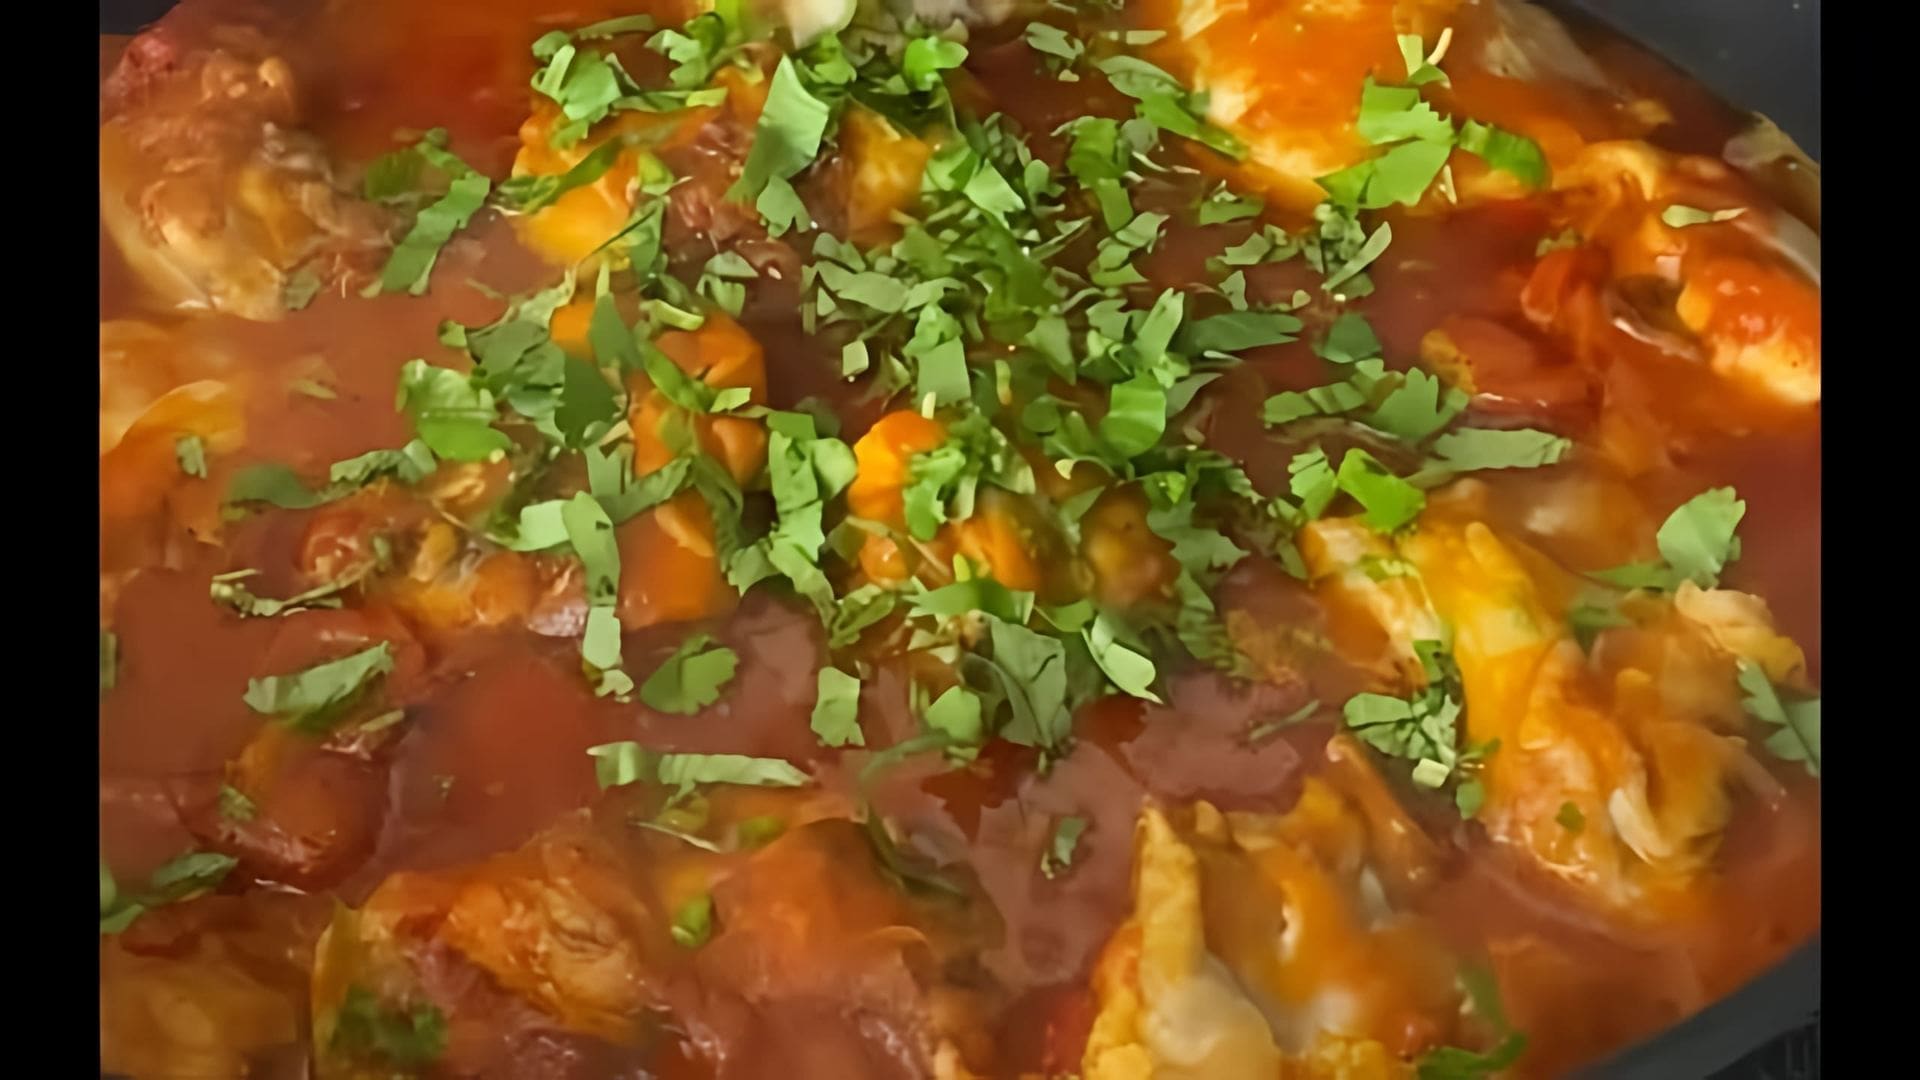 В этом видео демонстрируется рецепт приготовления куриных бедер в томатном соусе на сковороде